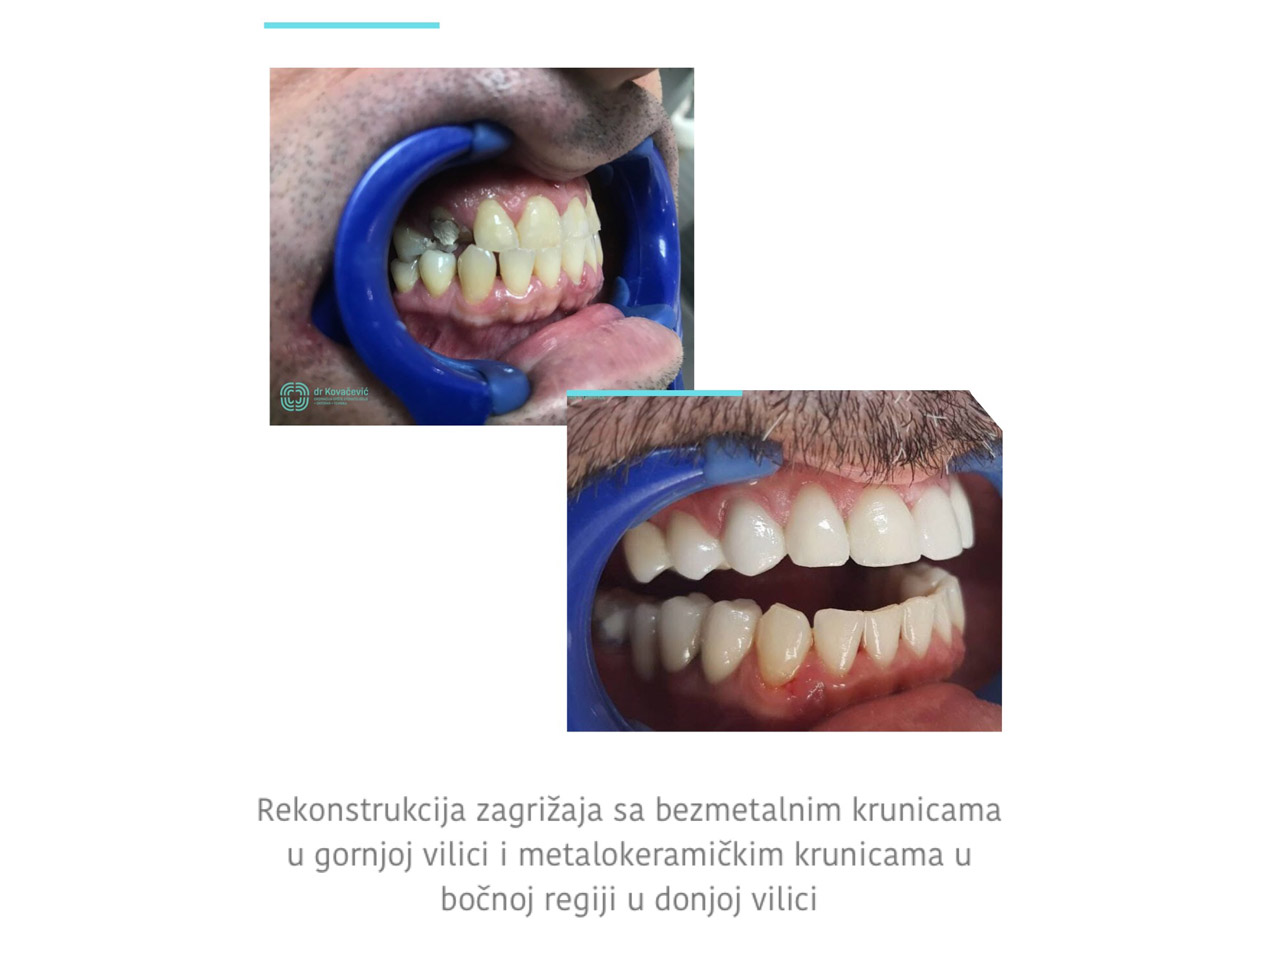 DENTAL CLINIC AND X-RAY CENTER DR KOVACEVIC Dental surgery Belgrade - Photo 10